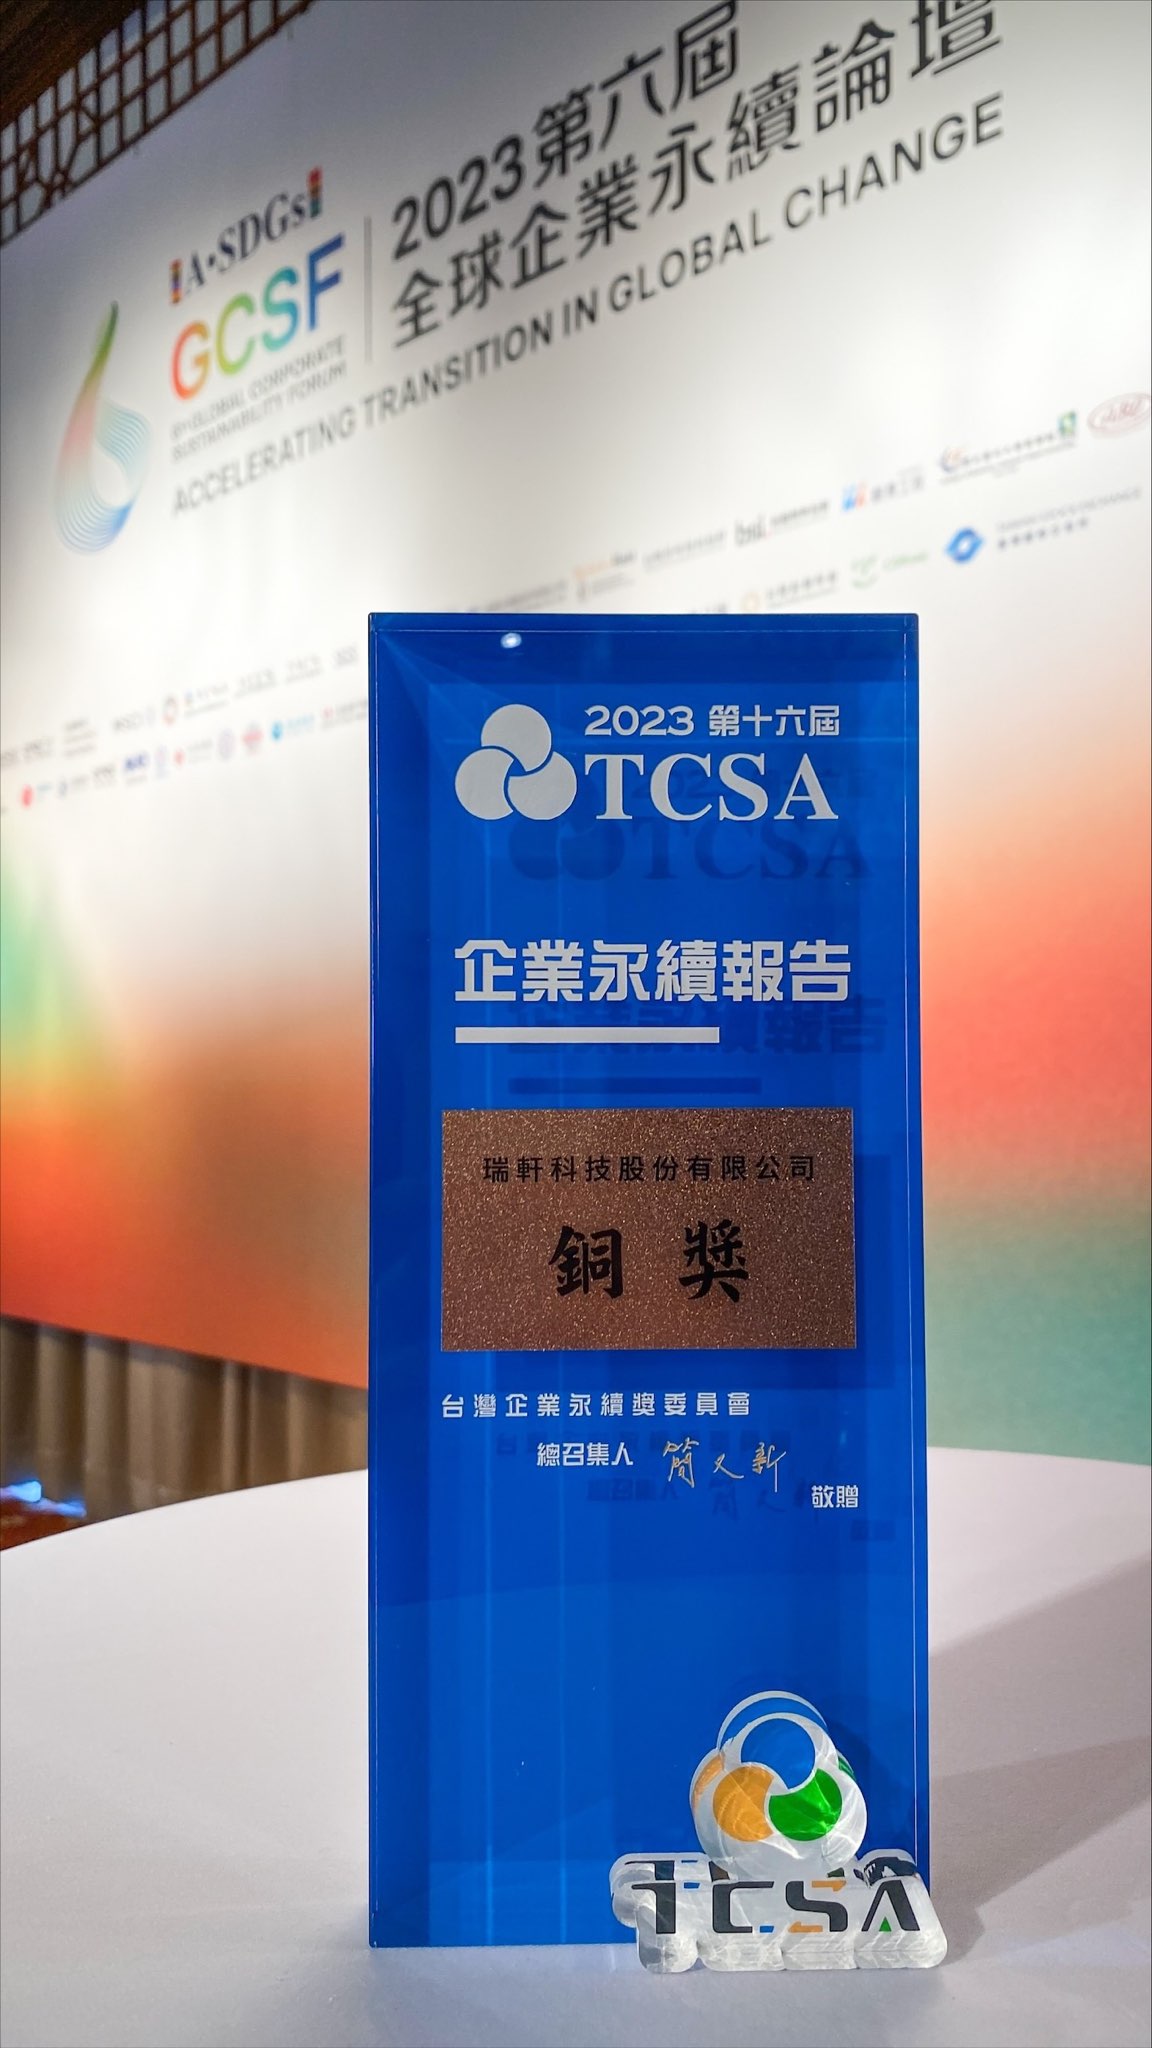 2022永續報告書獲得TCSA台灣企業永續獎-永續報告類-電子資訊製造業-第1類銅級獎!!